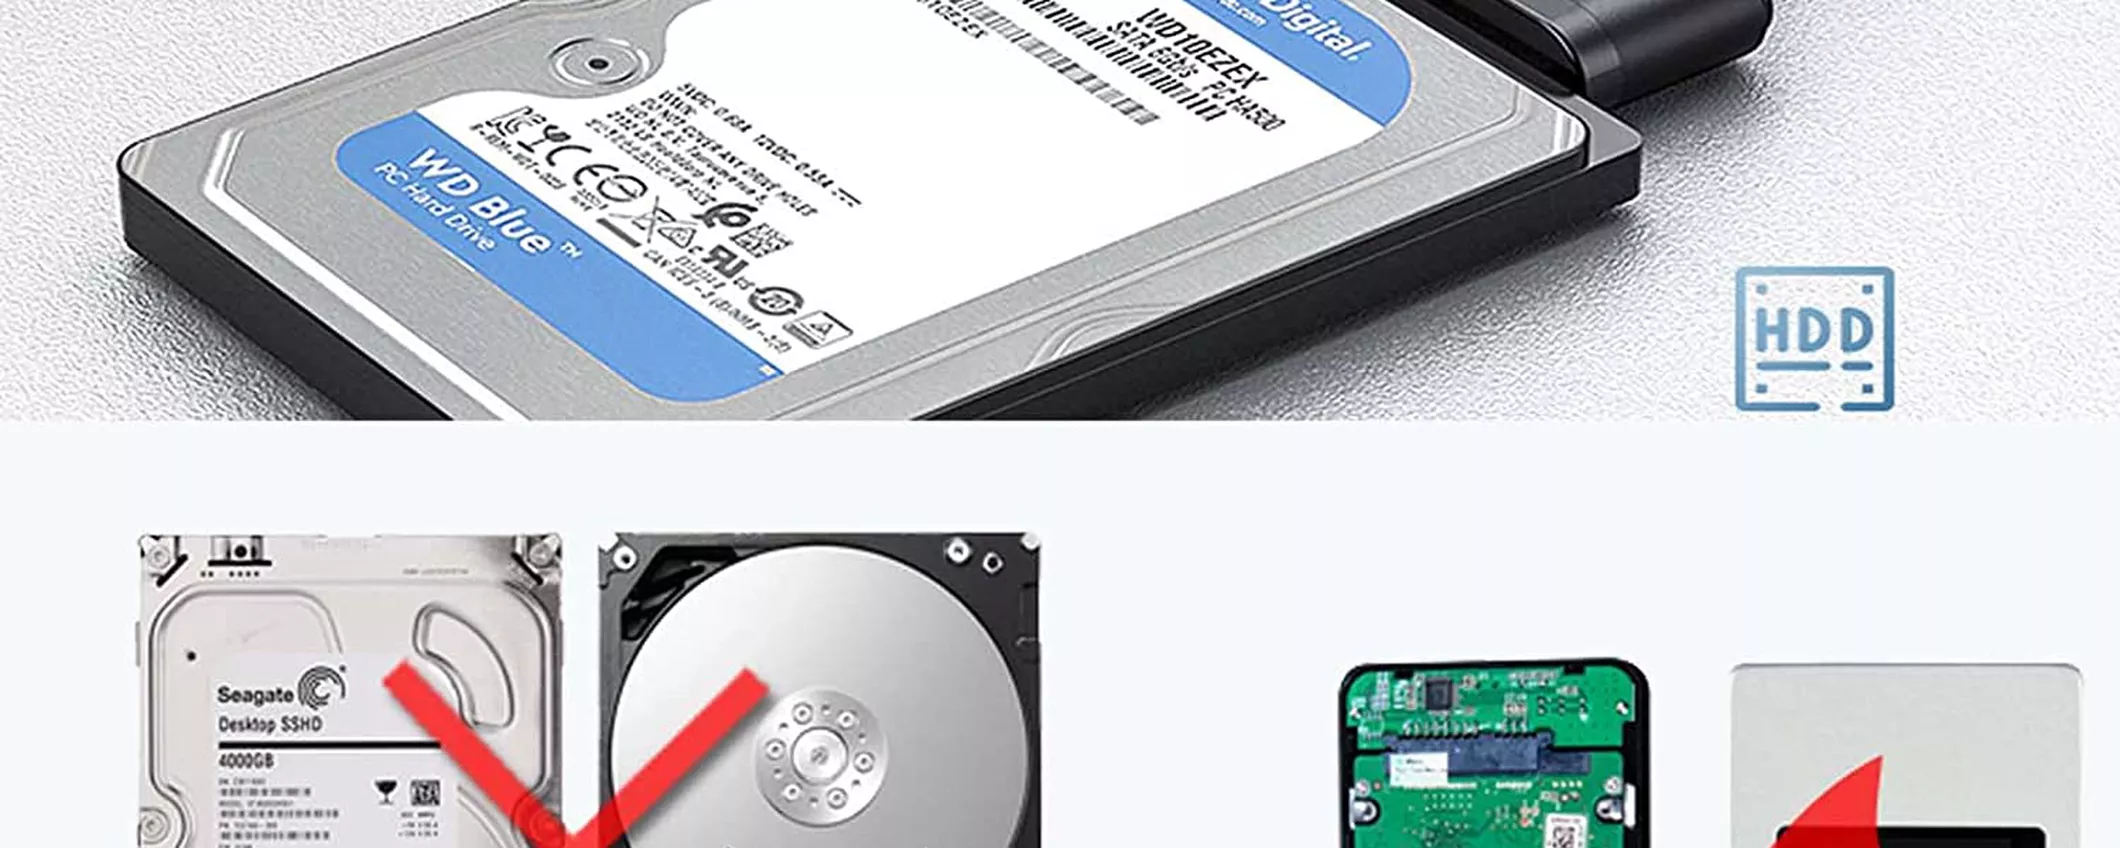 Trasforma qualsiasi SSD in un disco esterno con questi adattatori economici